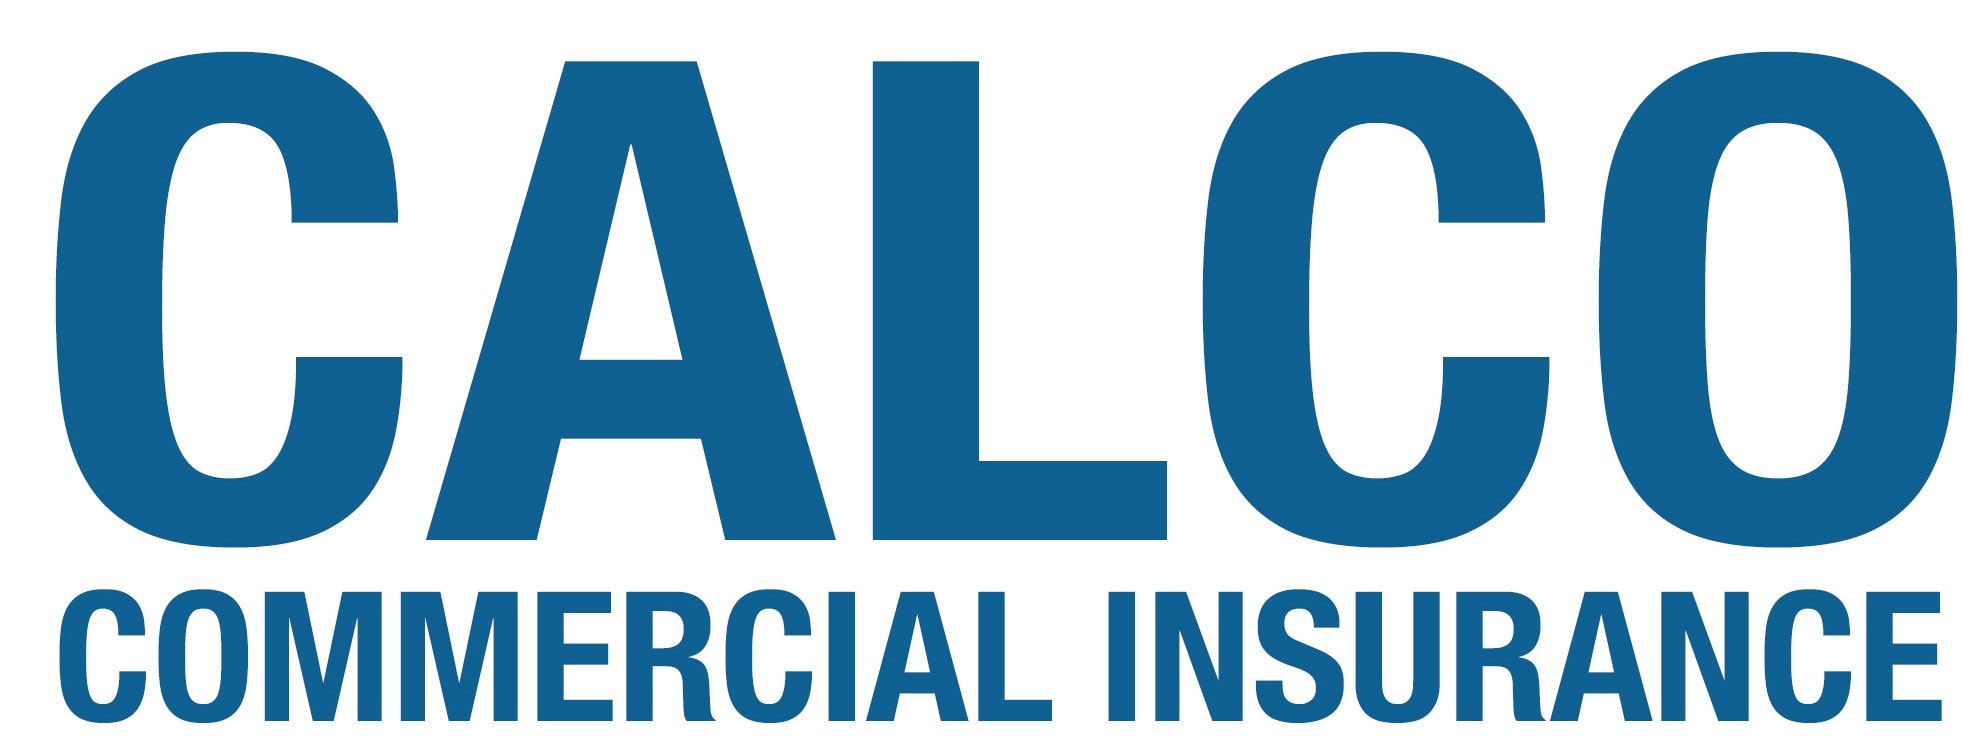 Calco Commercial Insurance branding